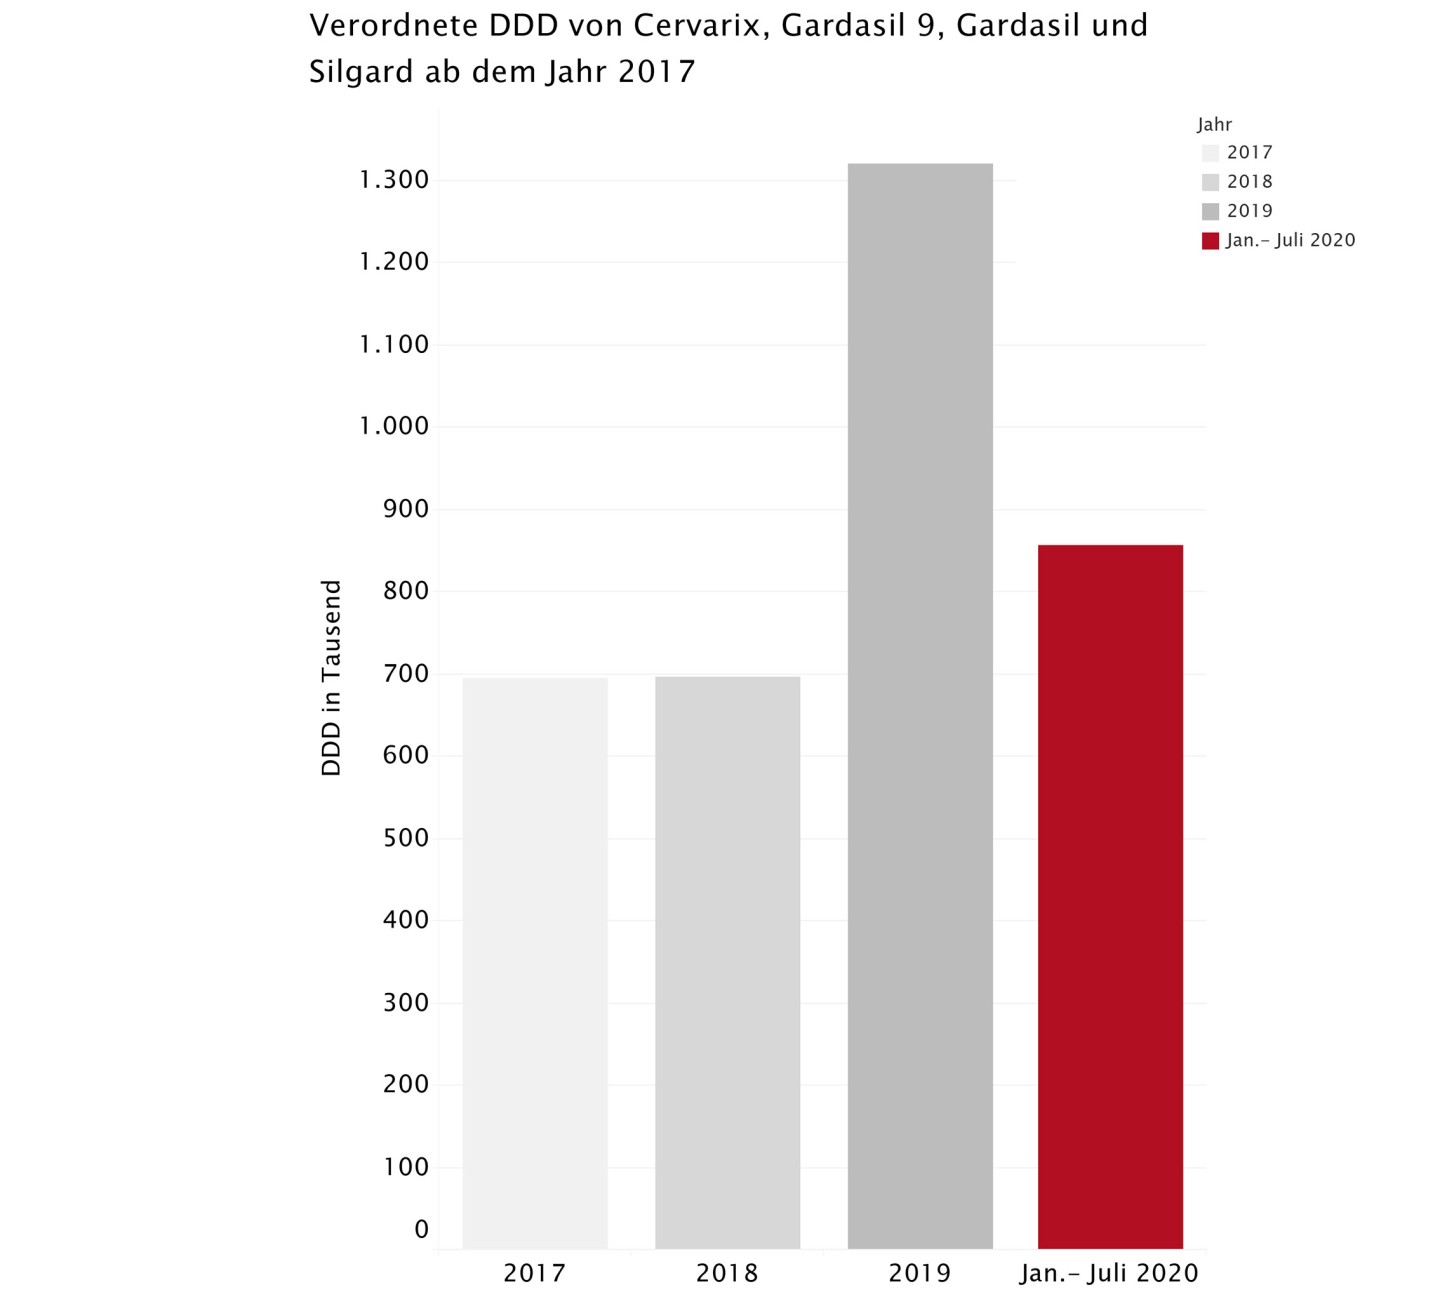 Verordnete DDD von Cervarix, Gardasil 9, Gardasil und Silgard ab dem Jahr 2017